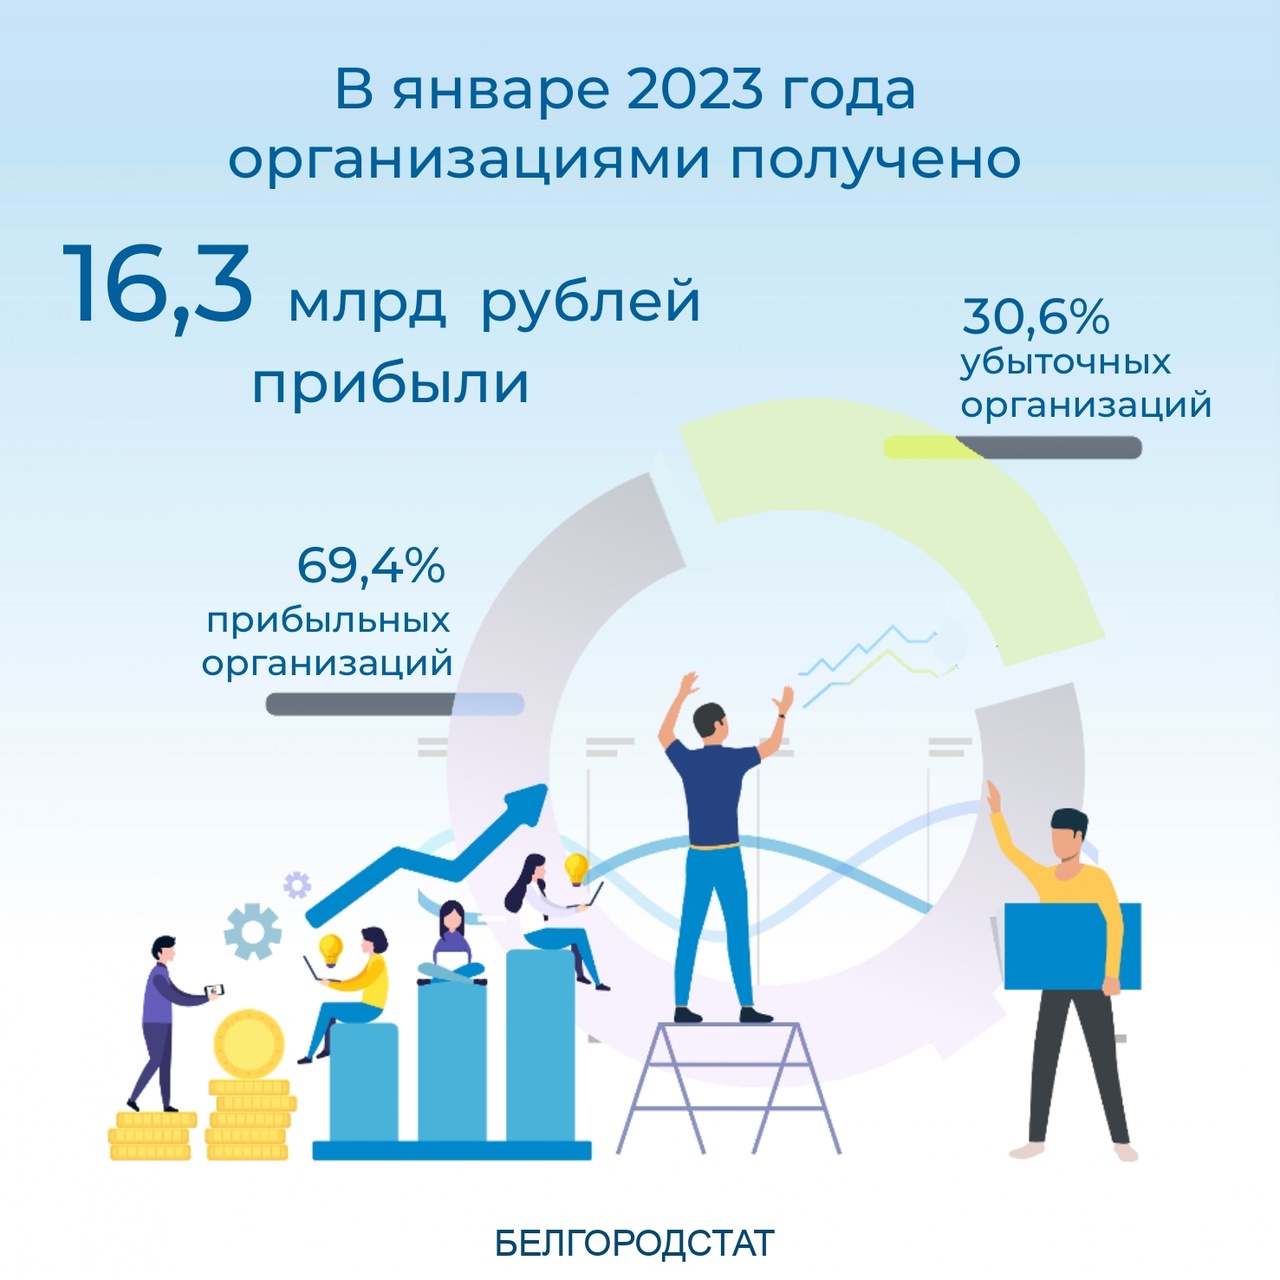 В январе 2023 года организациями Белгородской области получена прибыль в размере 16,3 млрд рублей.